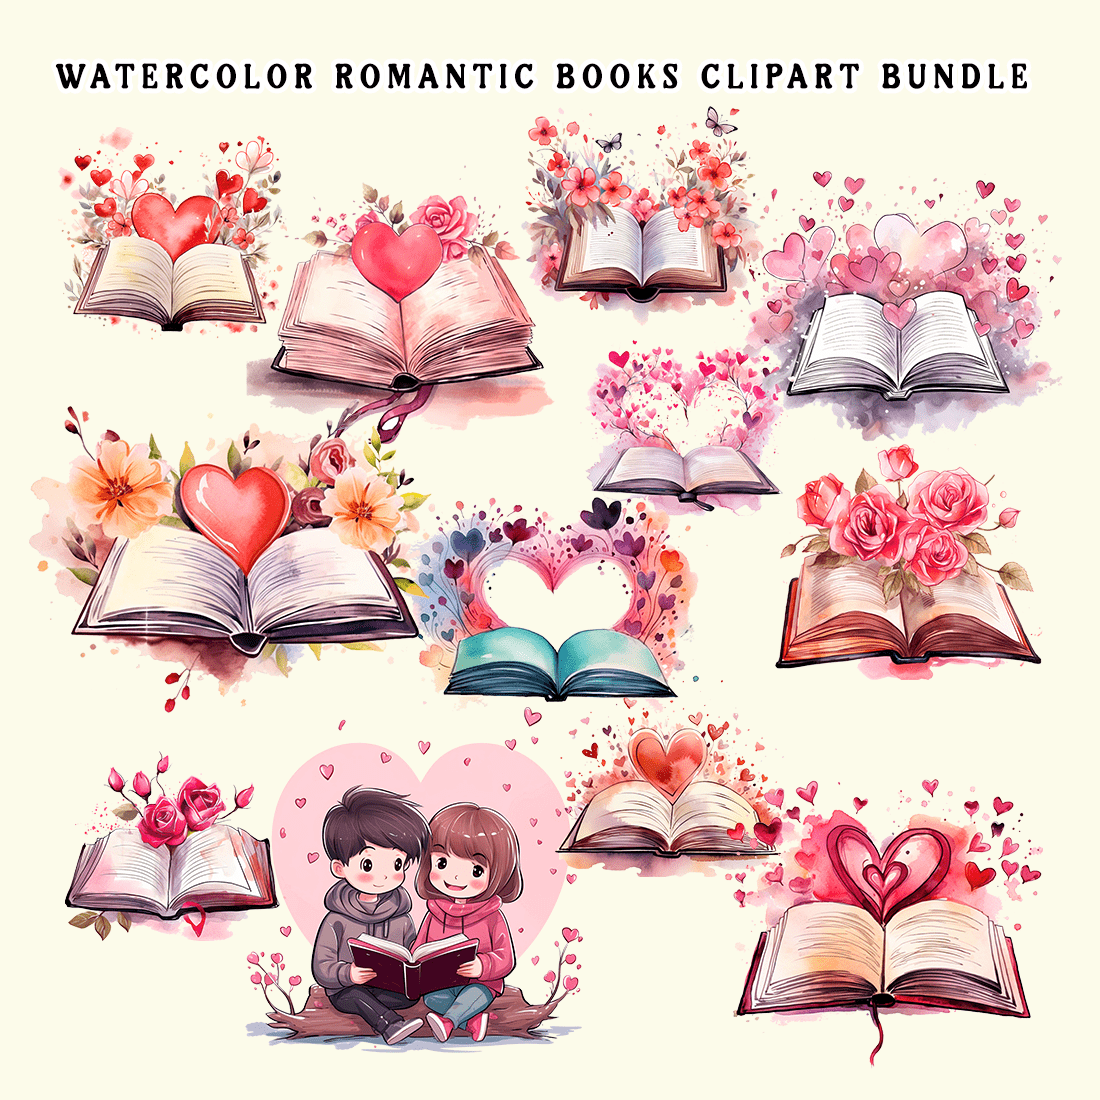 Watercolor Romantic Books Clipart Bundle preview image.